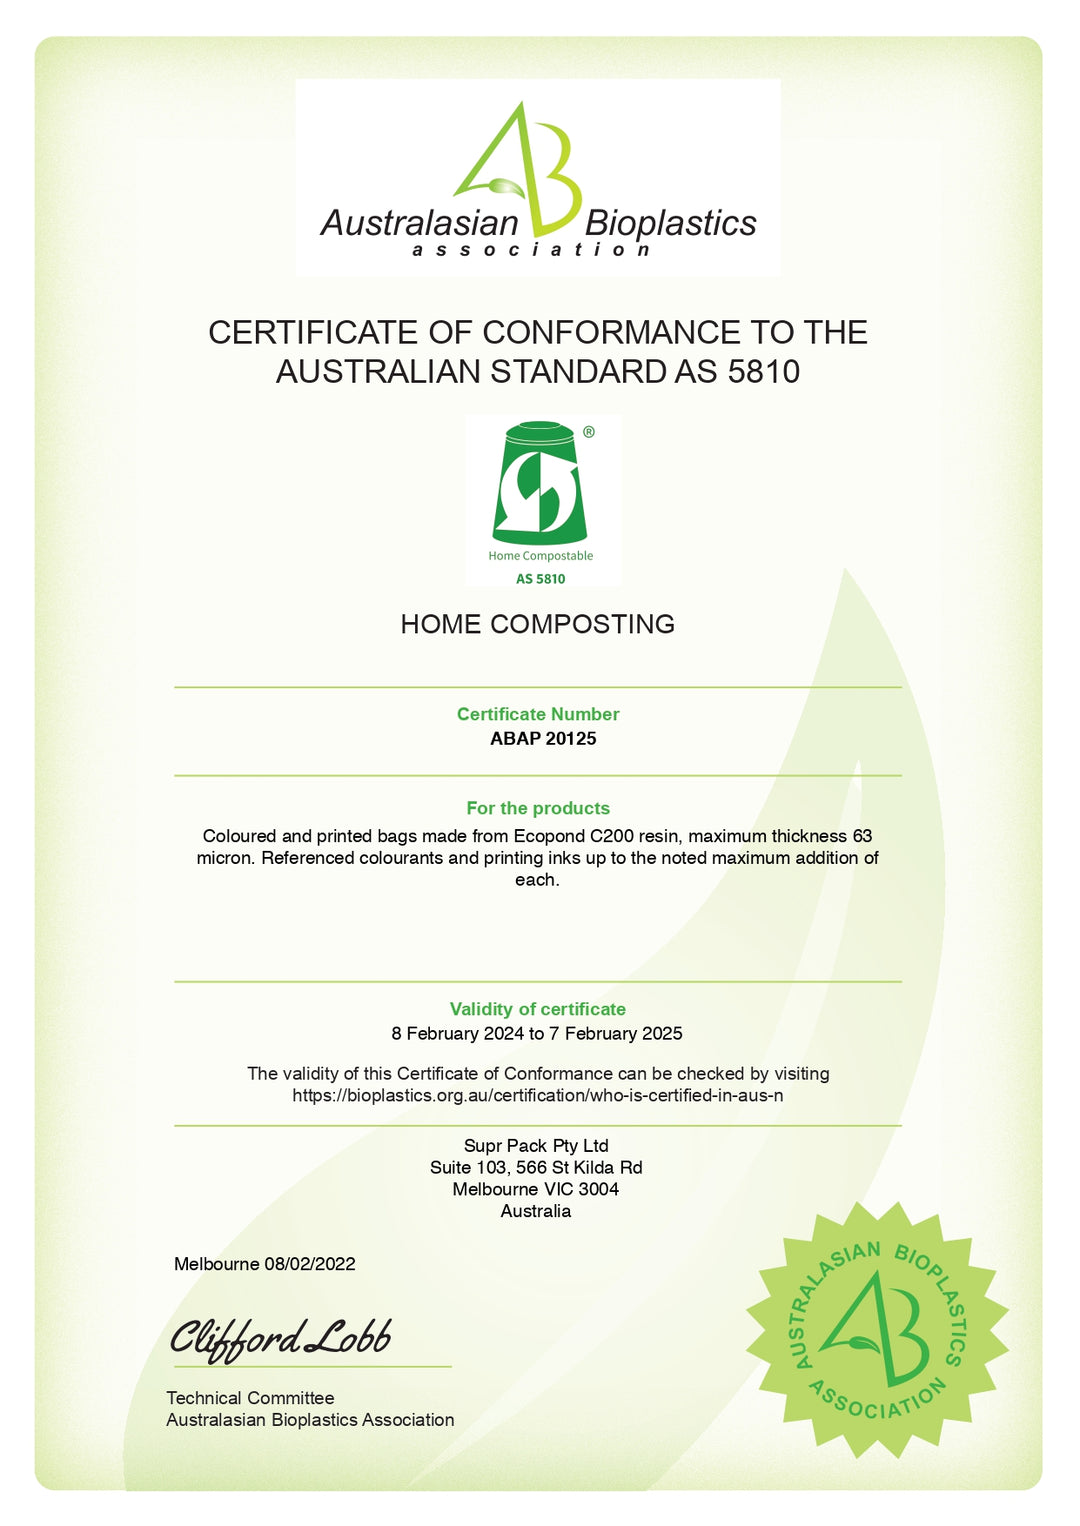 ABAP Certificate